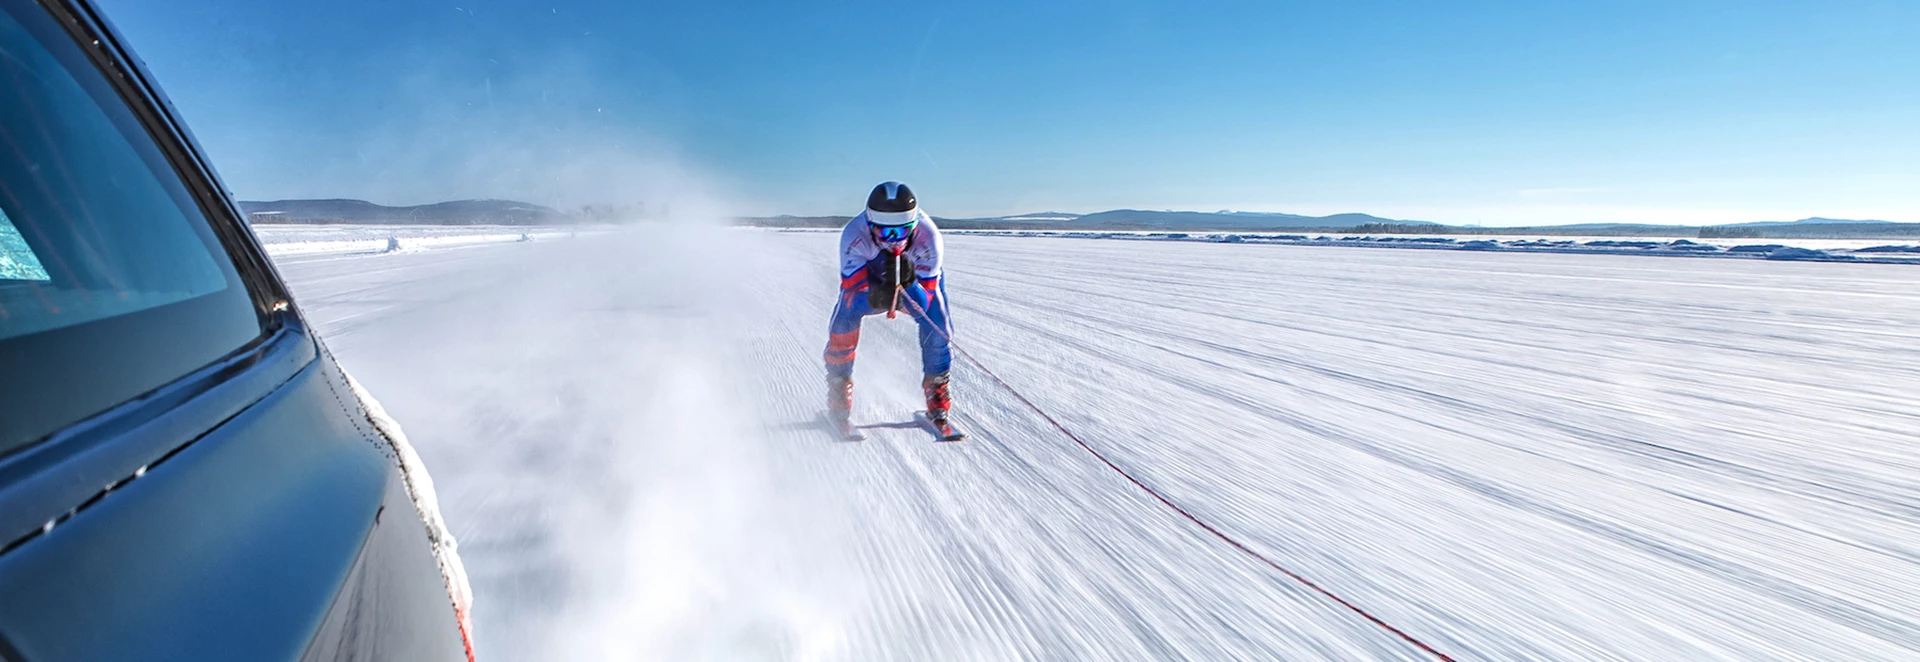 Jaguar helps set ski towing speed record 